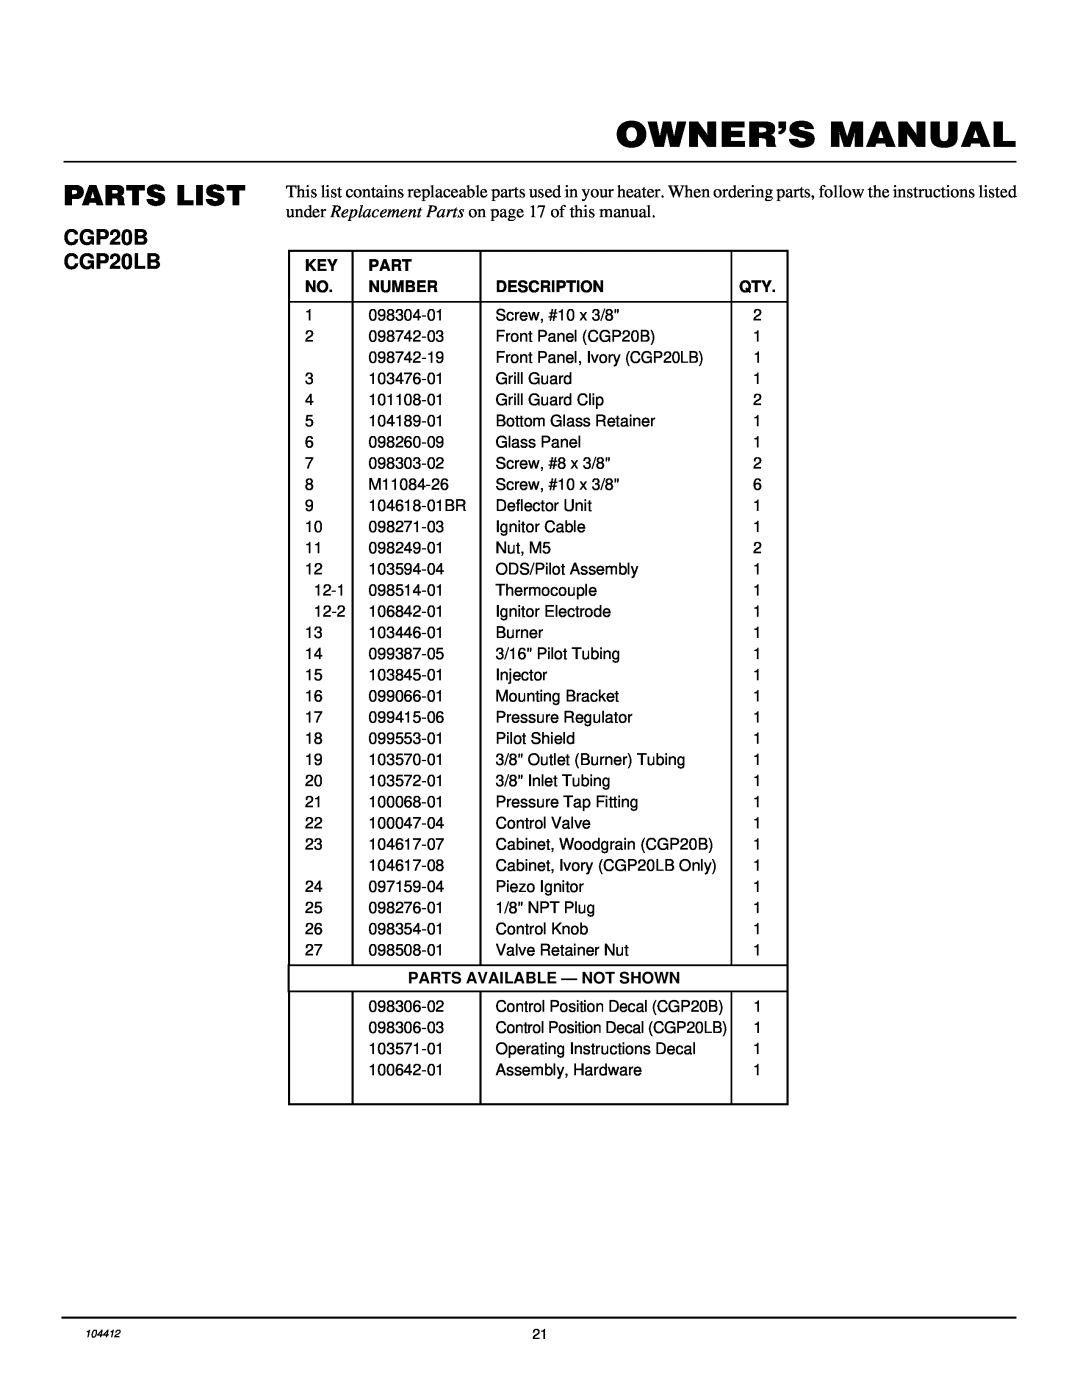 Desa CGP20LB, CGP20B, RP30E installation manual Parts List, 098304-01 